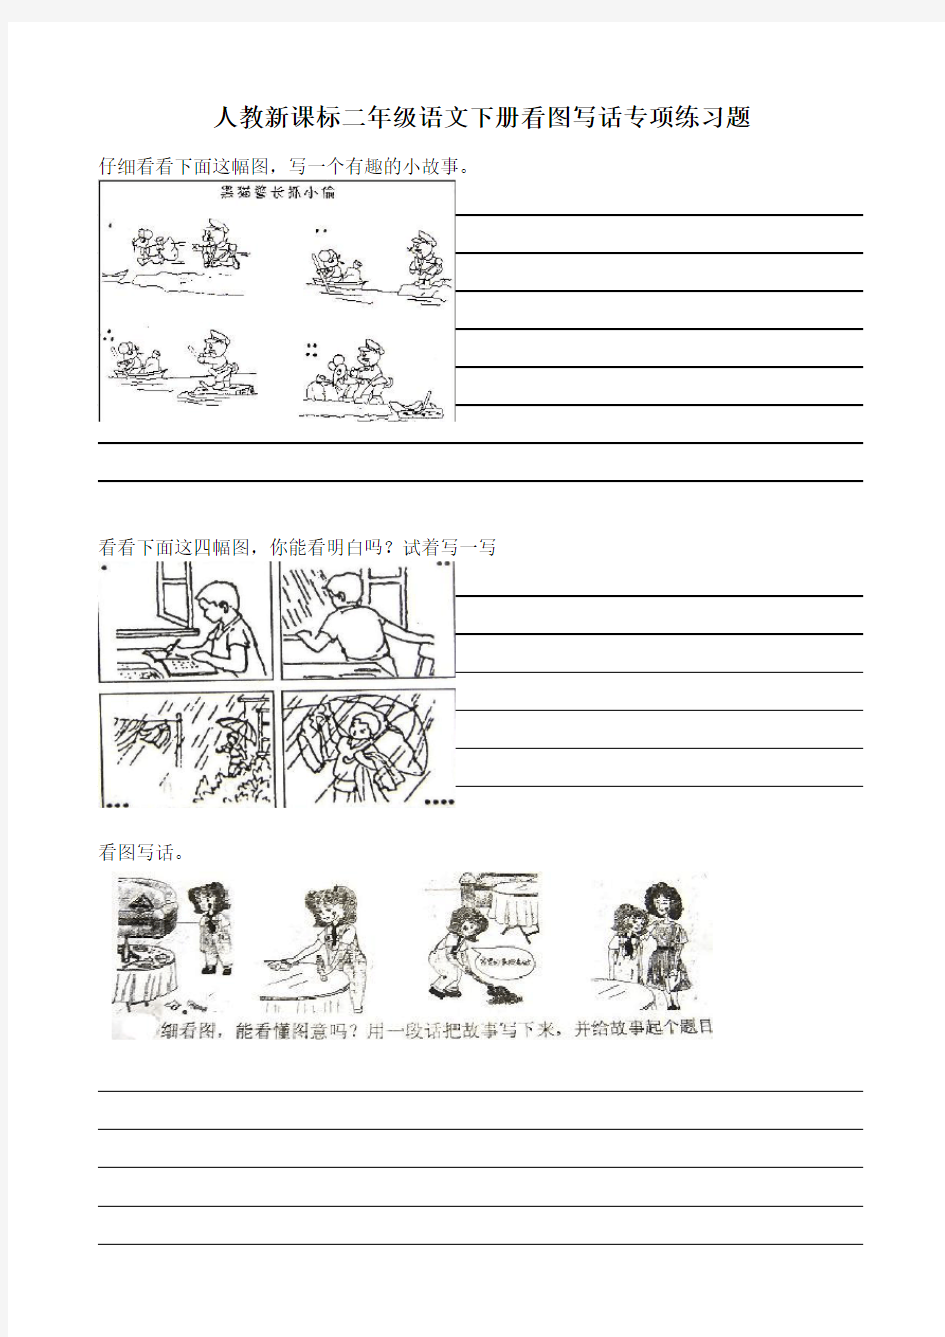 (完整)小学二年级语文看图写话练习题